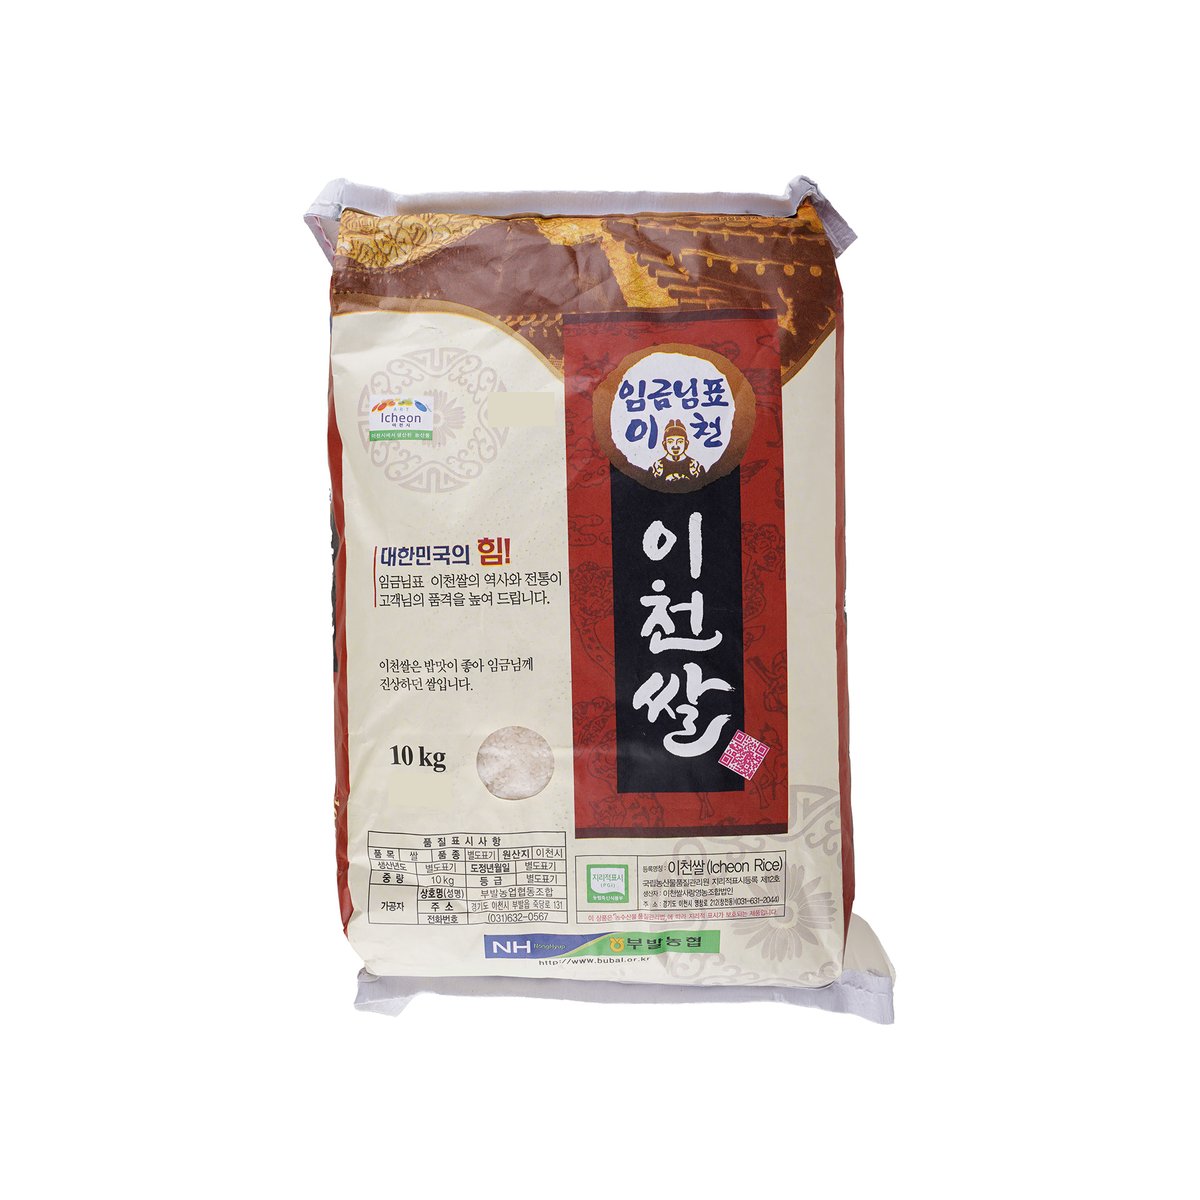 [2015년] 임금님표 이천쌀 (10kg)